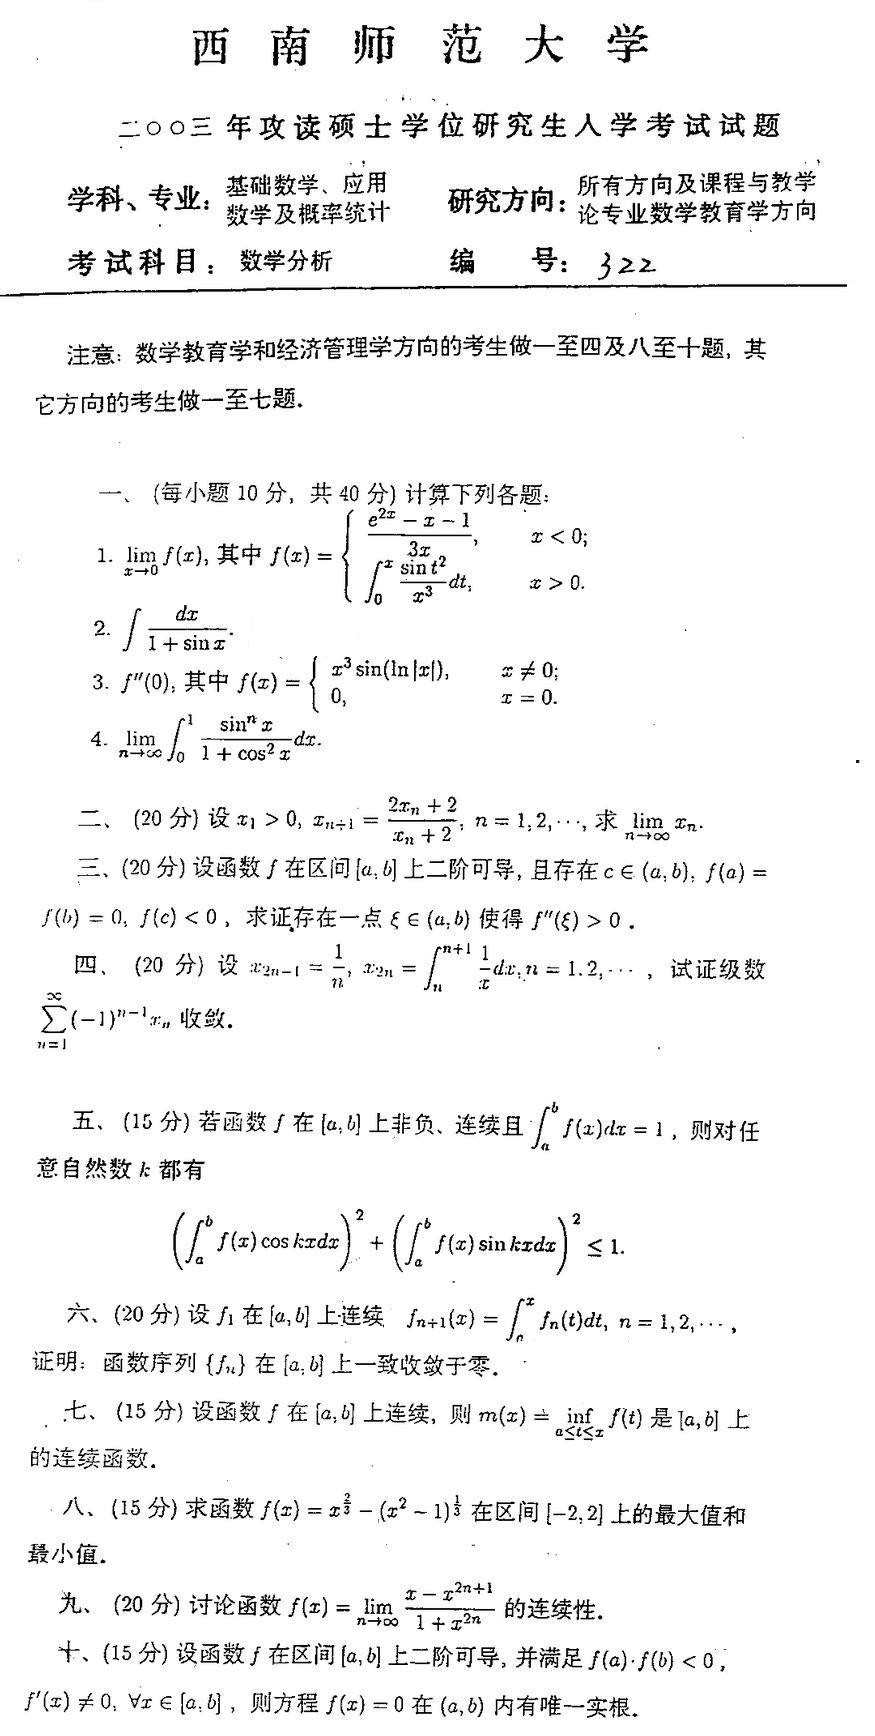 2003西南师范大学考研数学真题（数学分析）.png